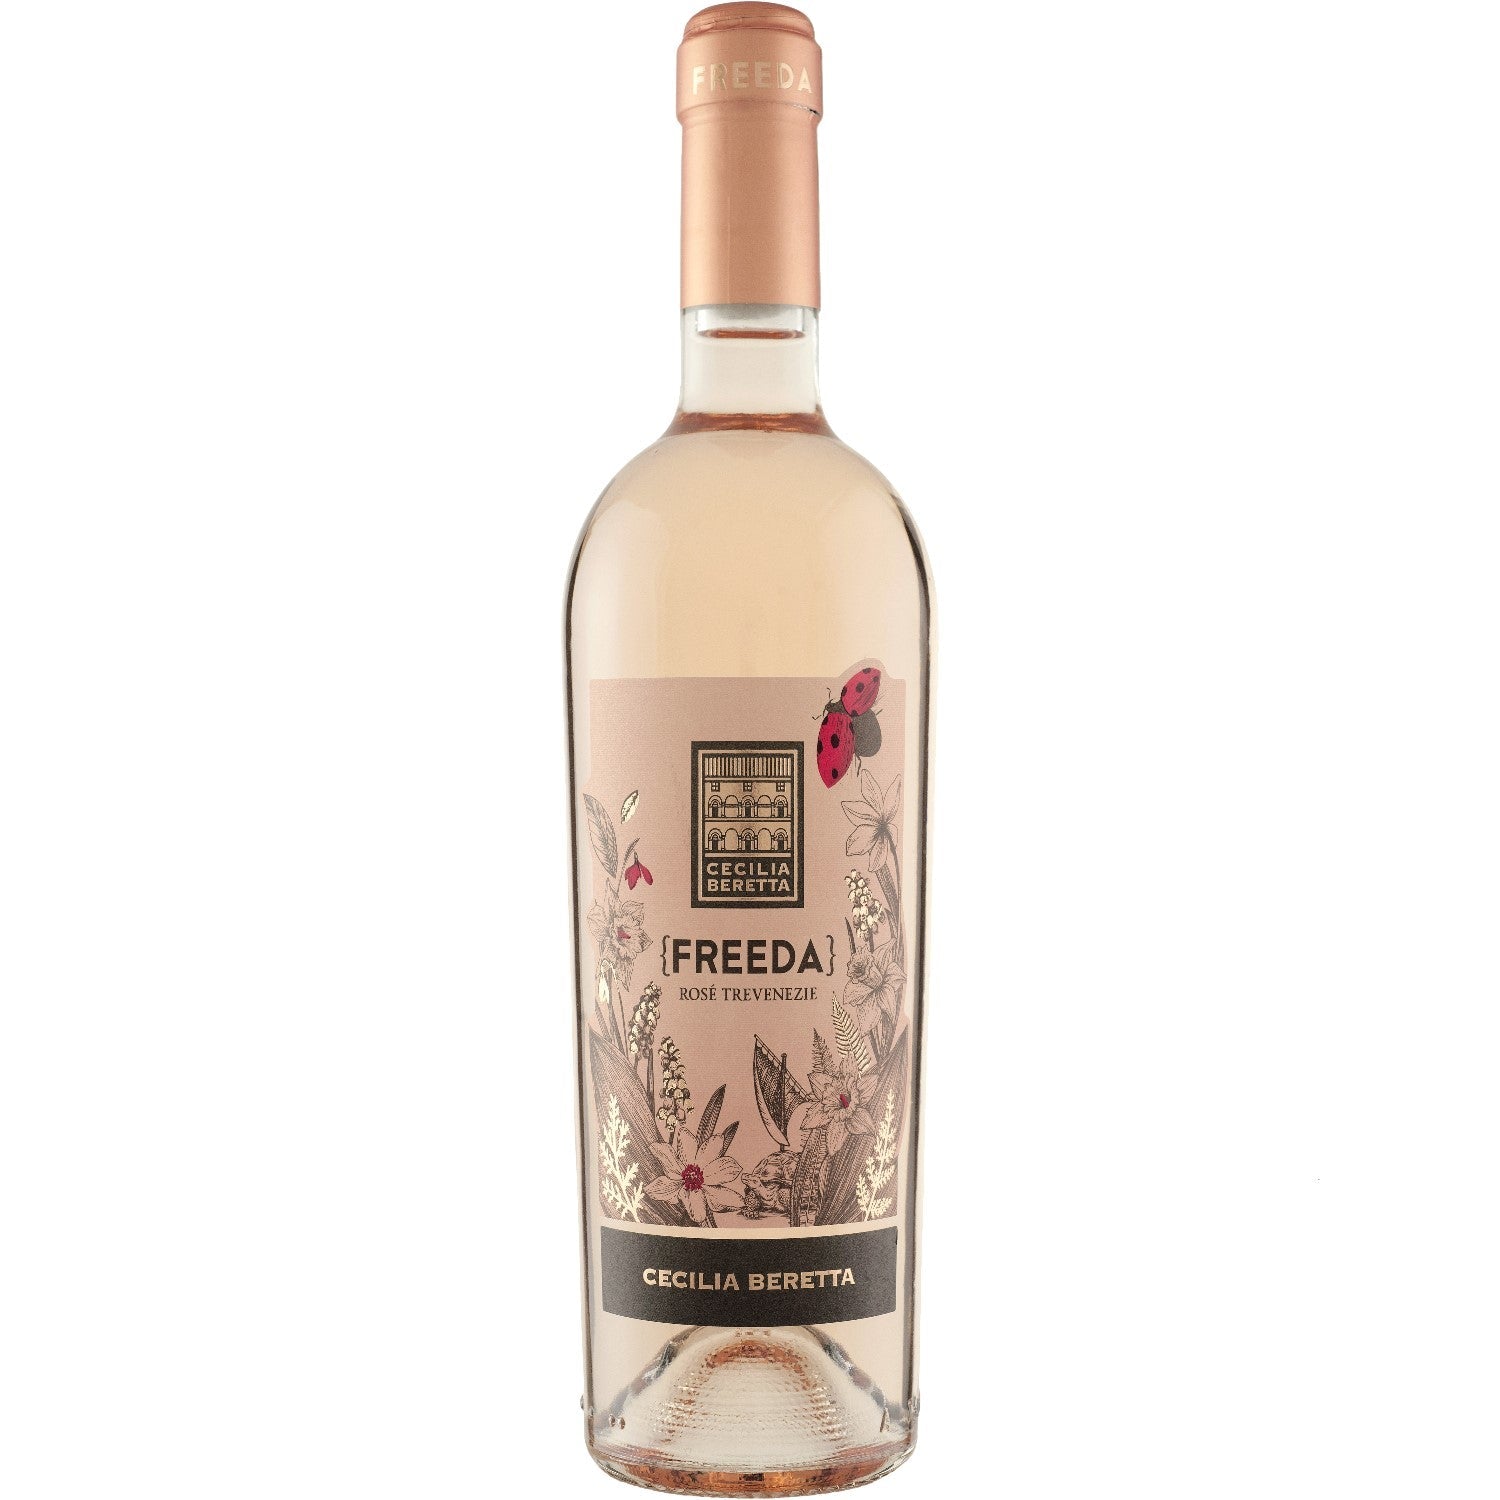 Cecilia Beretta Freeda Rosé Trevenezie IGT Roséwein Wein trocken Italien (3 x 0.75l) - Versanel -